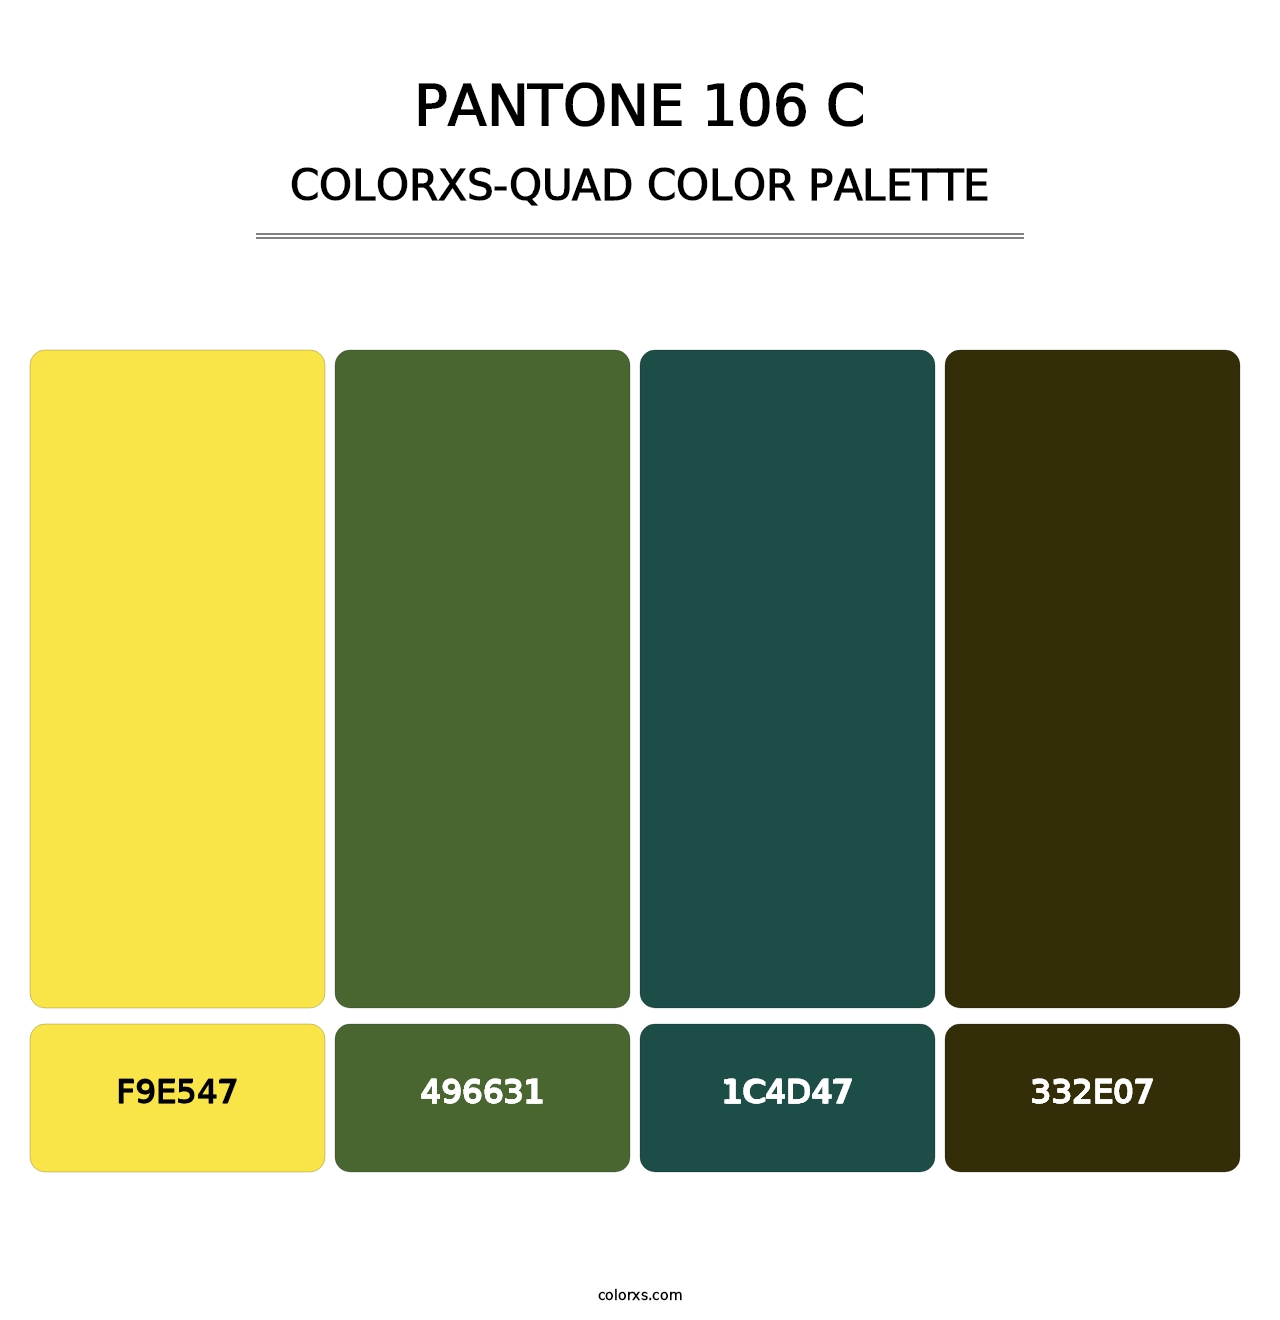 PANTONE 106 C - Colorxs Quad Palette